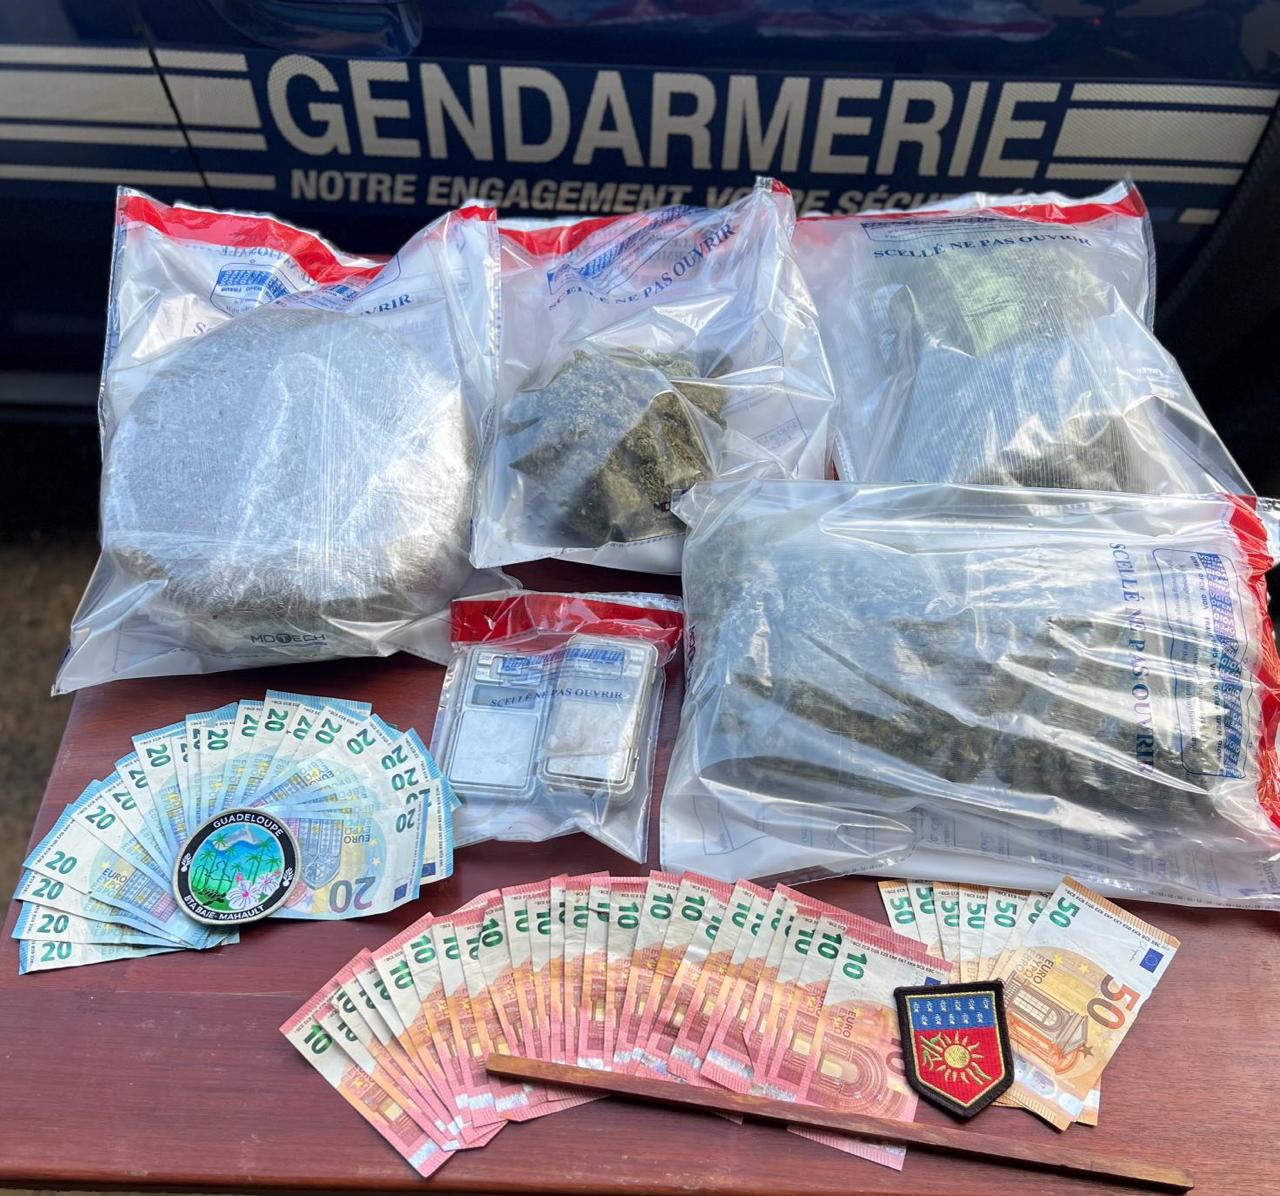     2 kilos de cannabis et 1 000 euros en petites coupures saisis à Baie-Mahault

